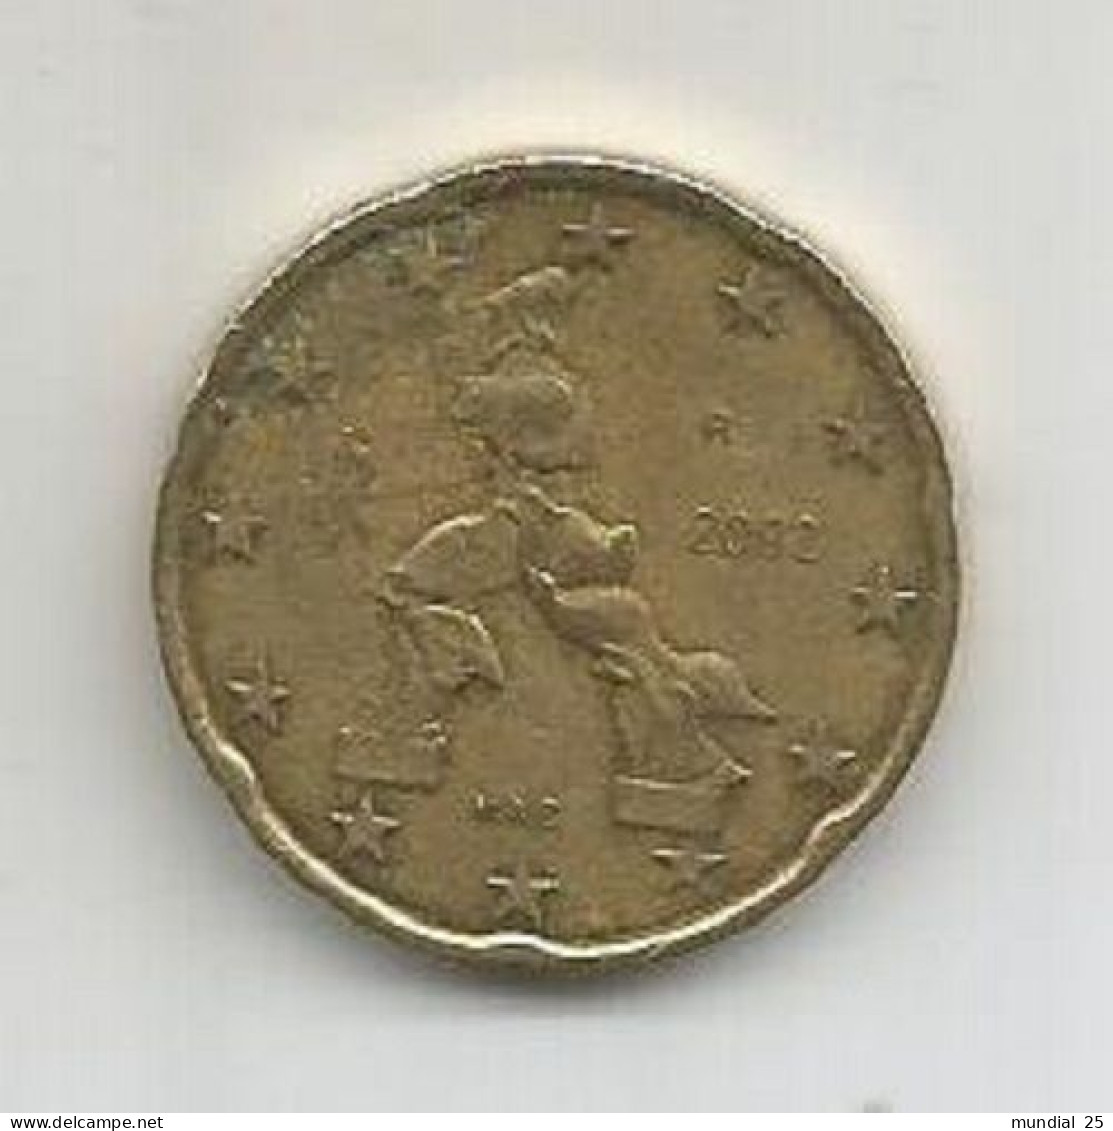 ITALY 20 EURO CENT 2002 (R) - Italy